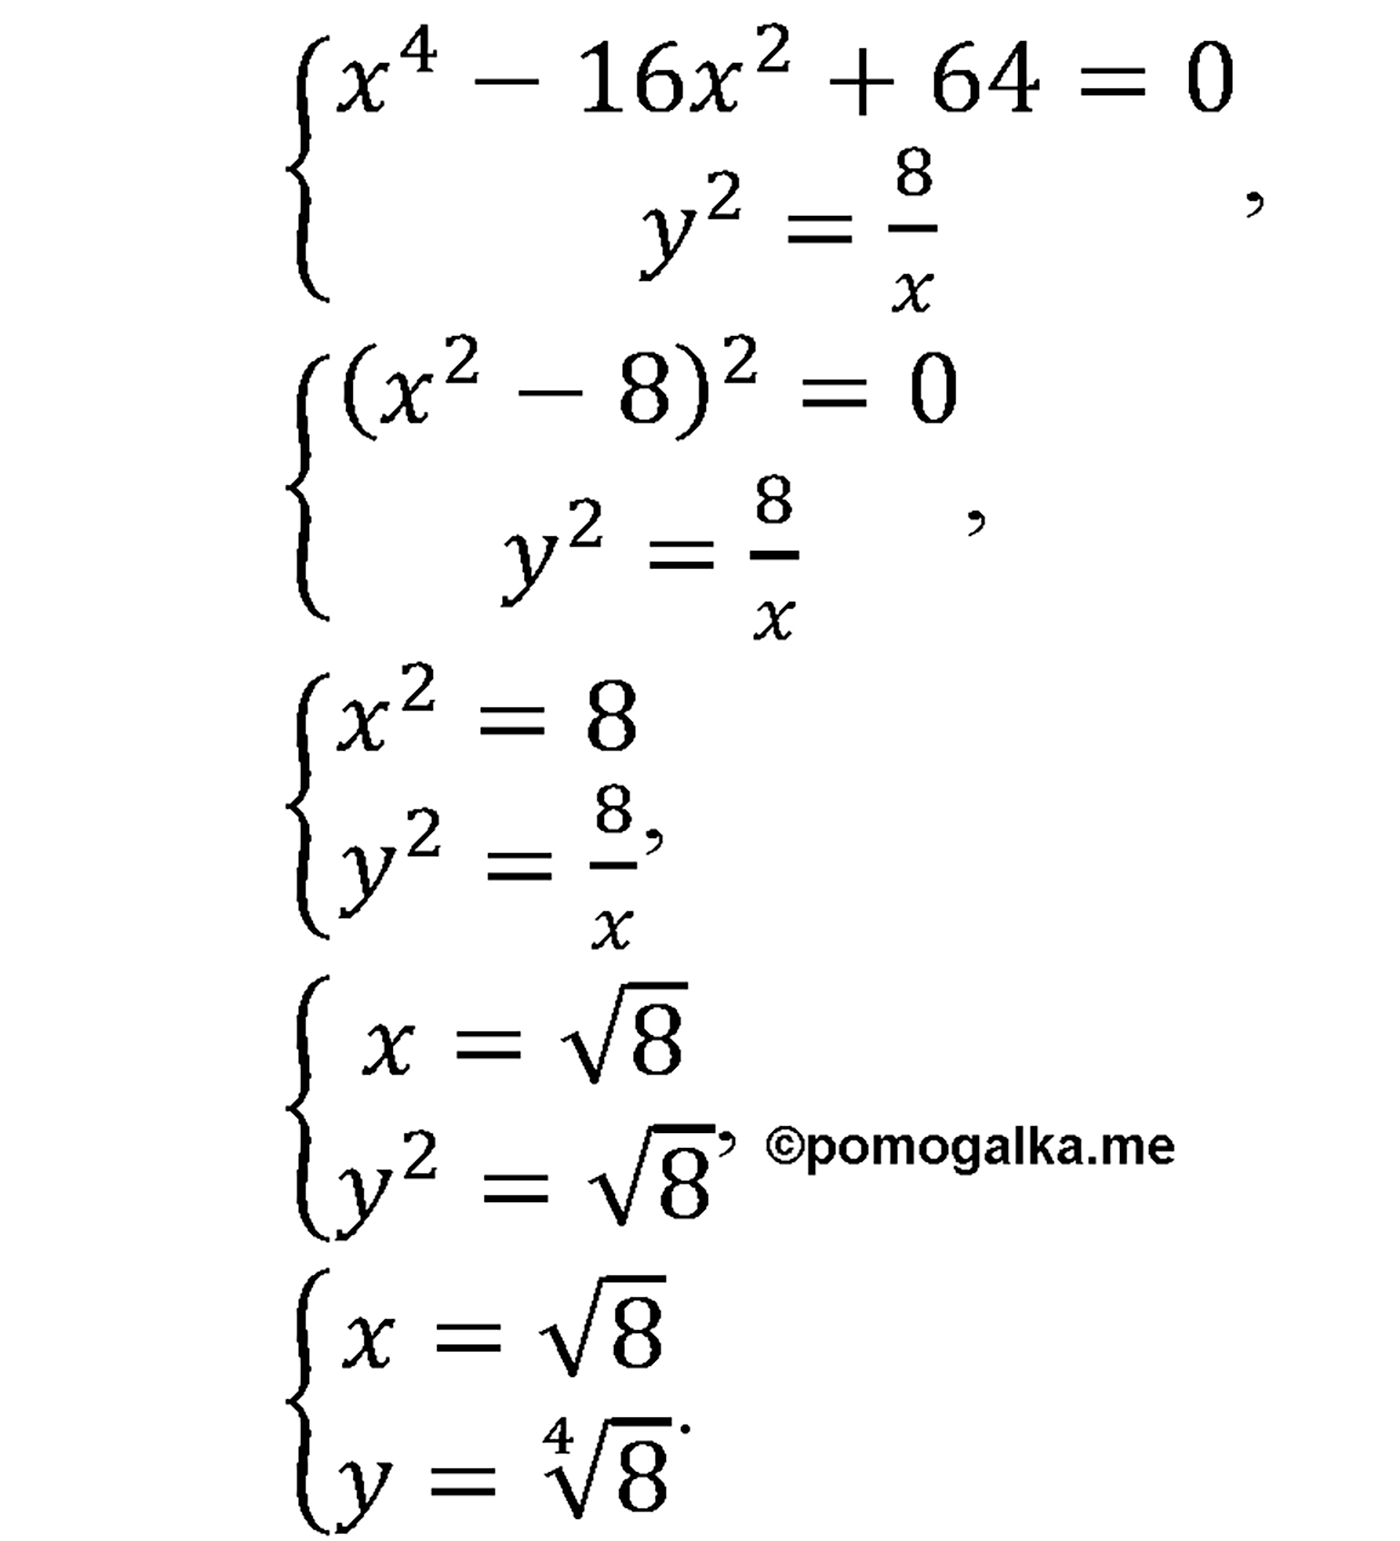 разбор задачи №1427 по алгебре за 10-11 класс из учебника Алимова, Колягина